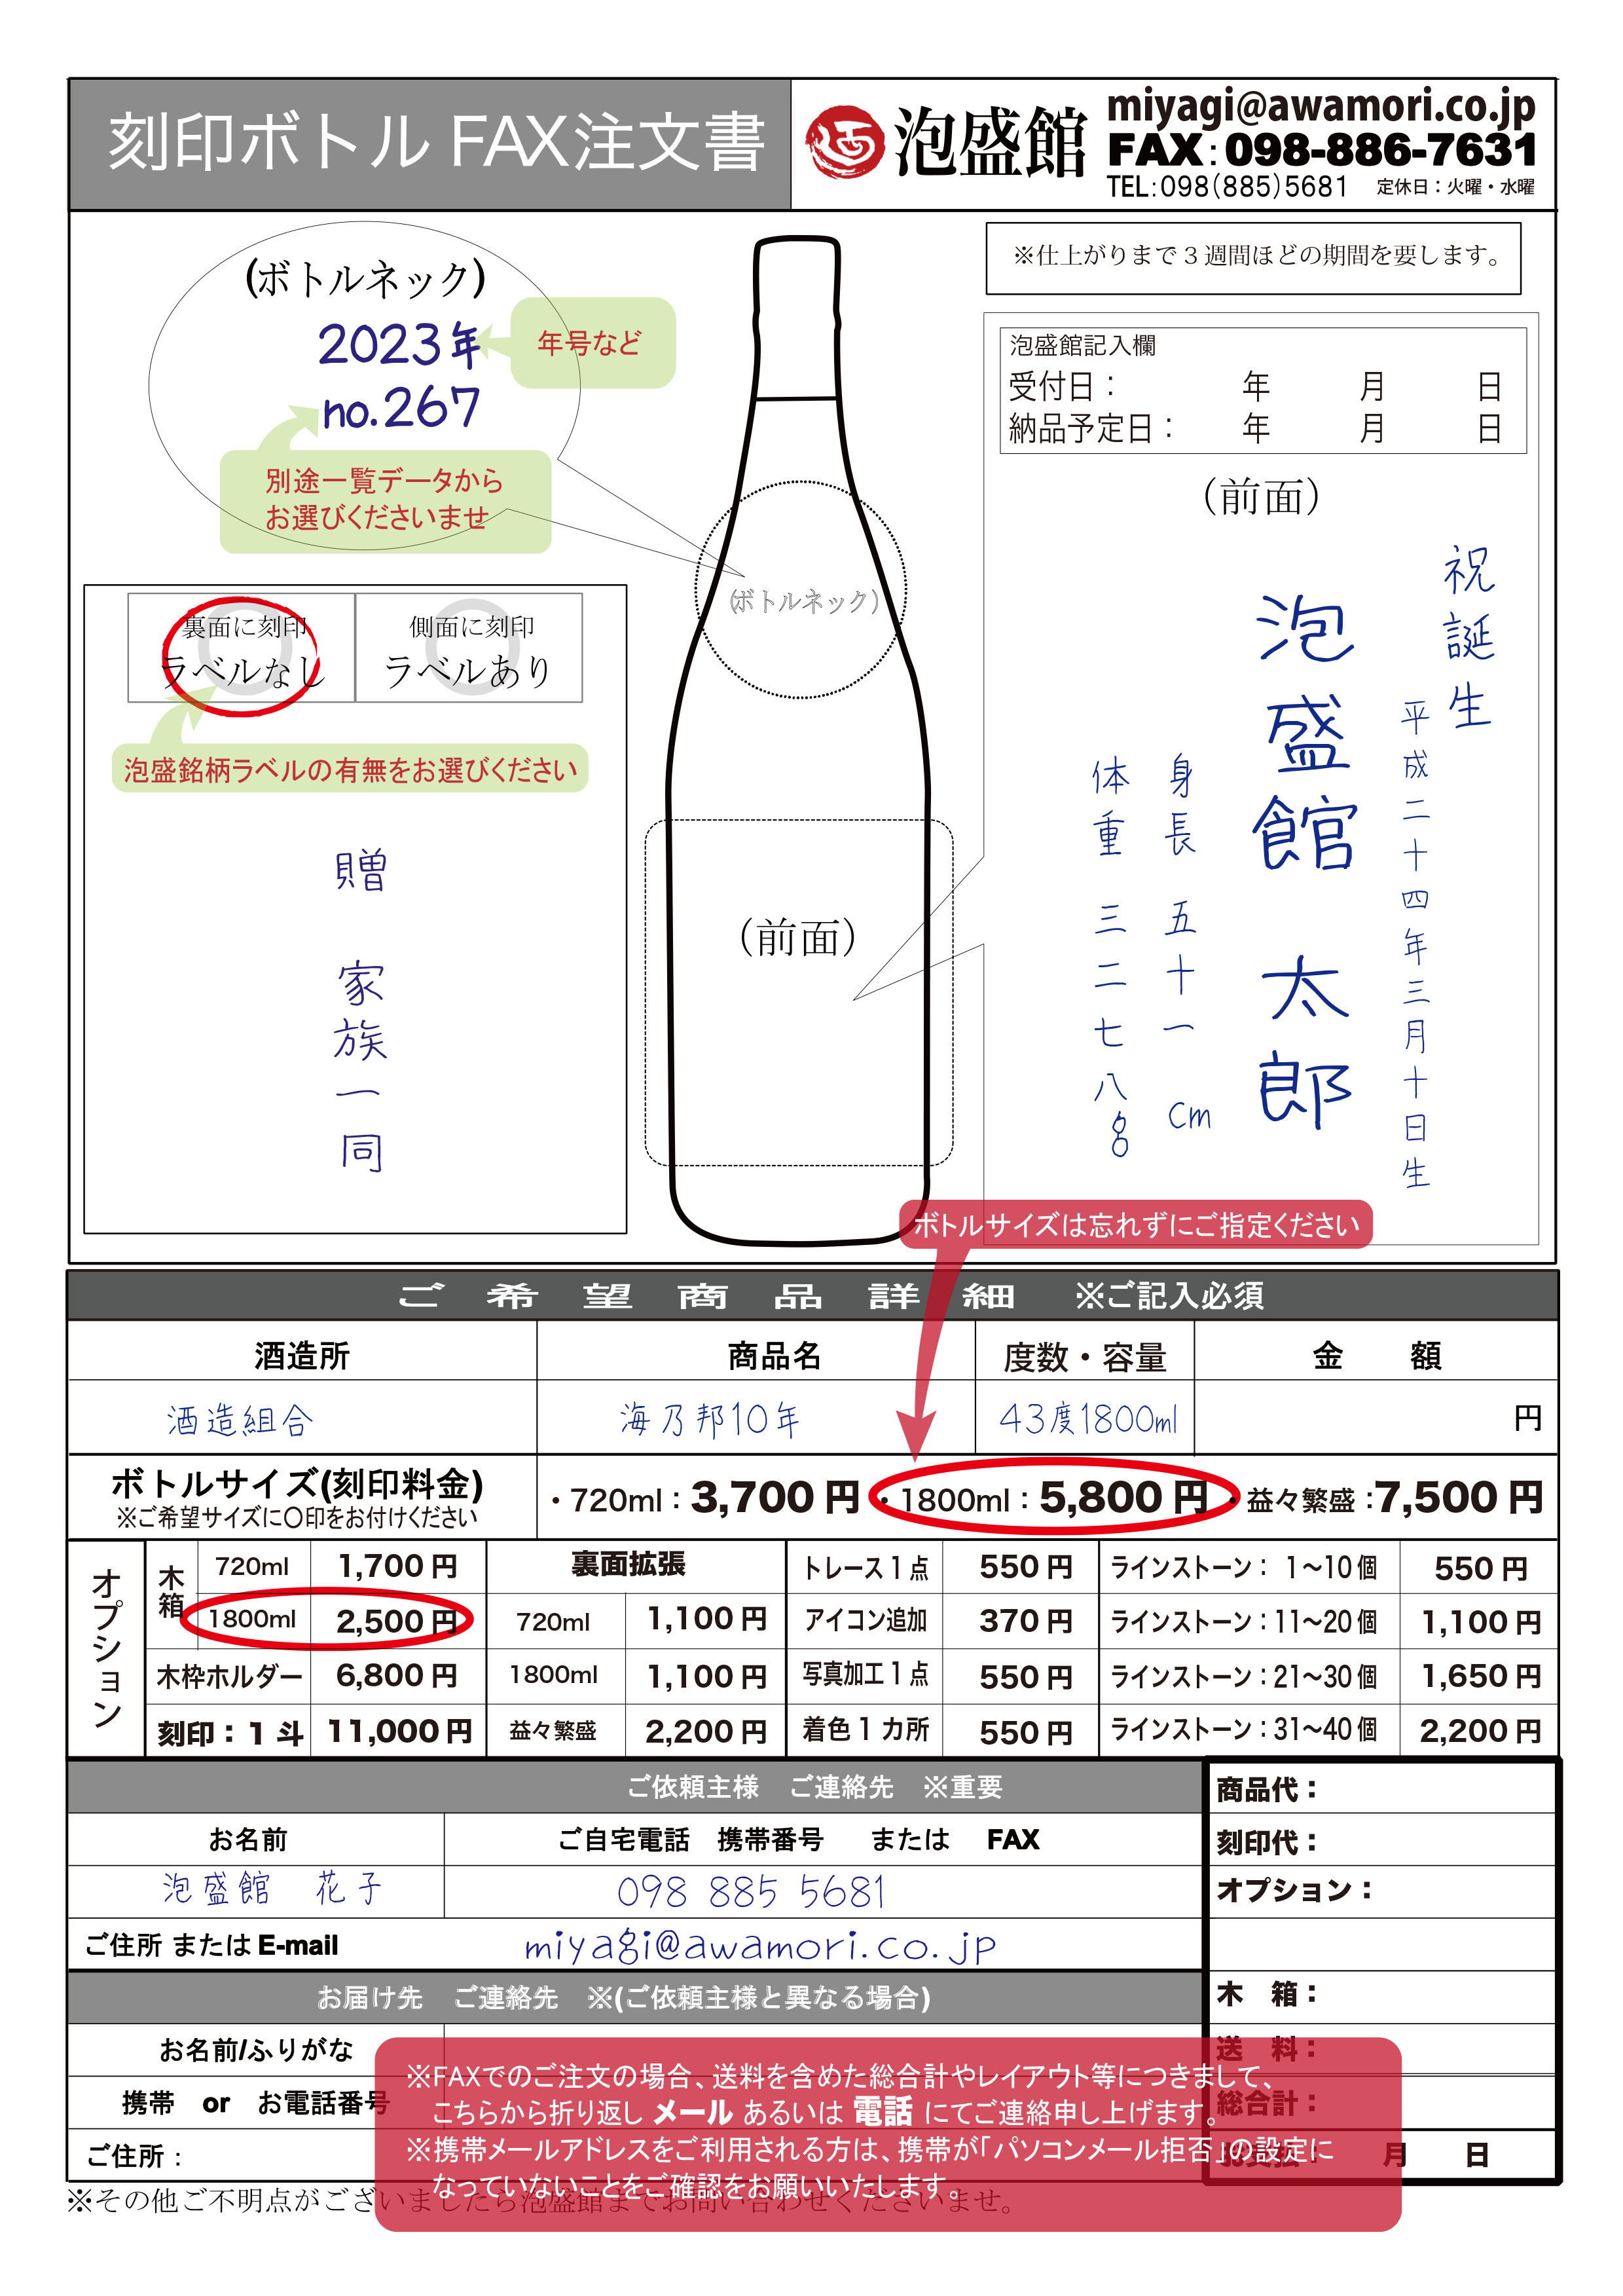 日本最級 泡盛 瑞穂5合壷（熟成3年古酒）43度 900ml | alphapublishing.com